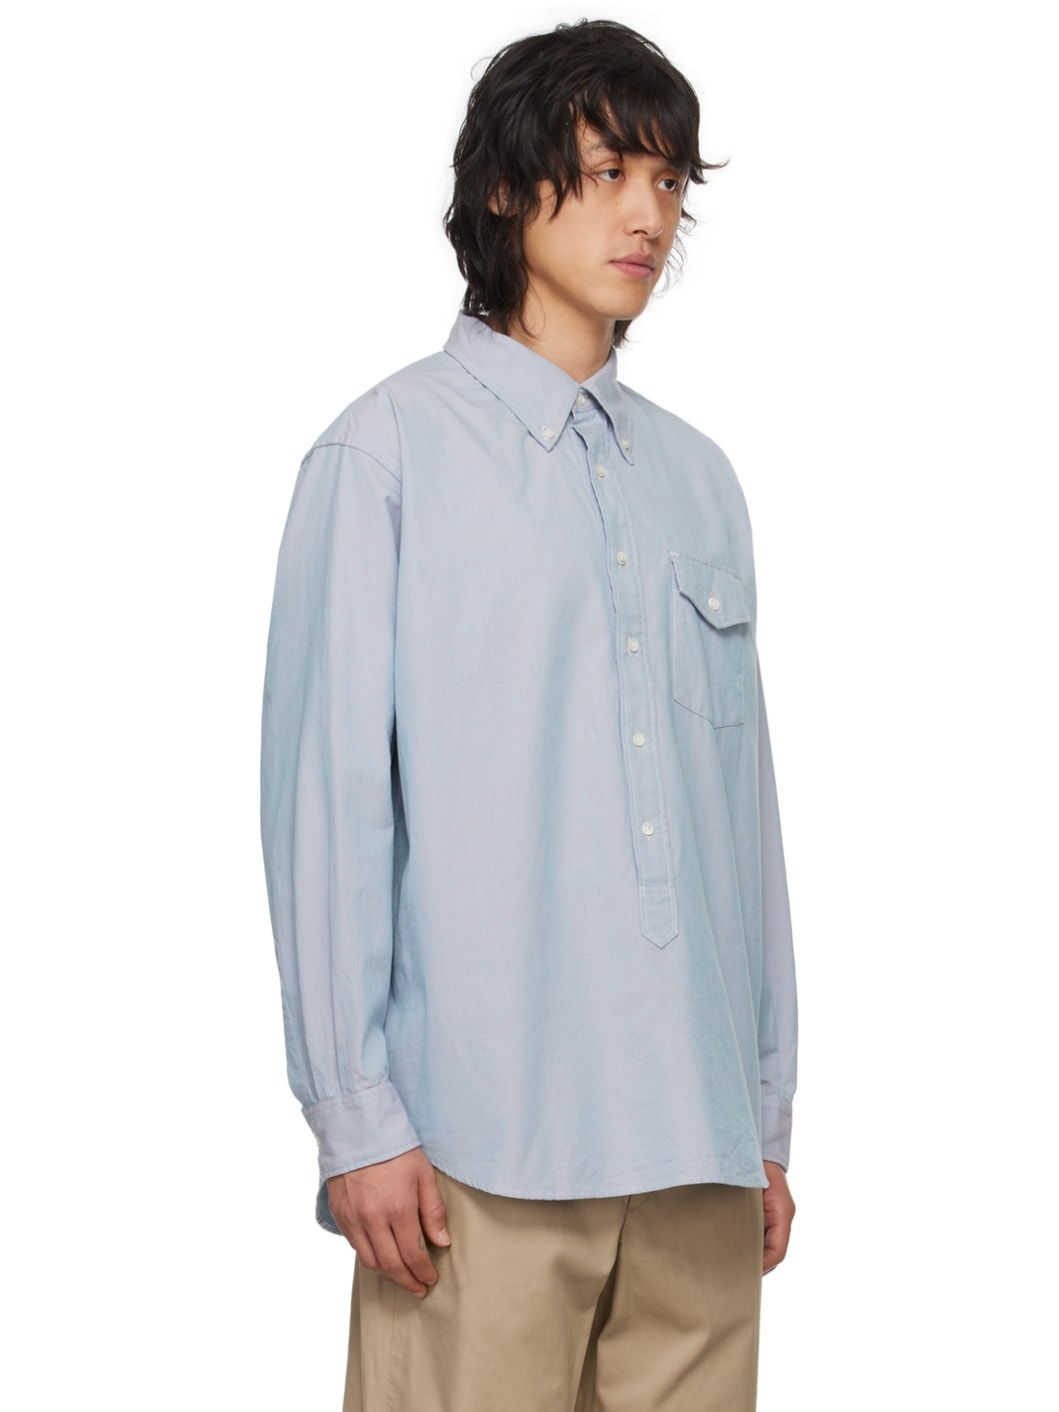 Blue Iridescent Shirt - 2